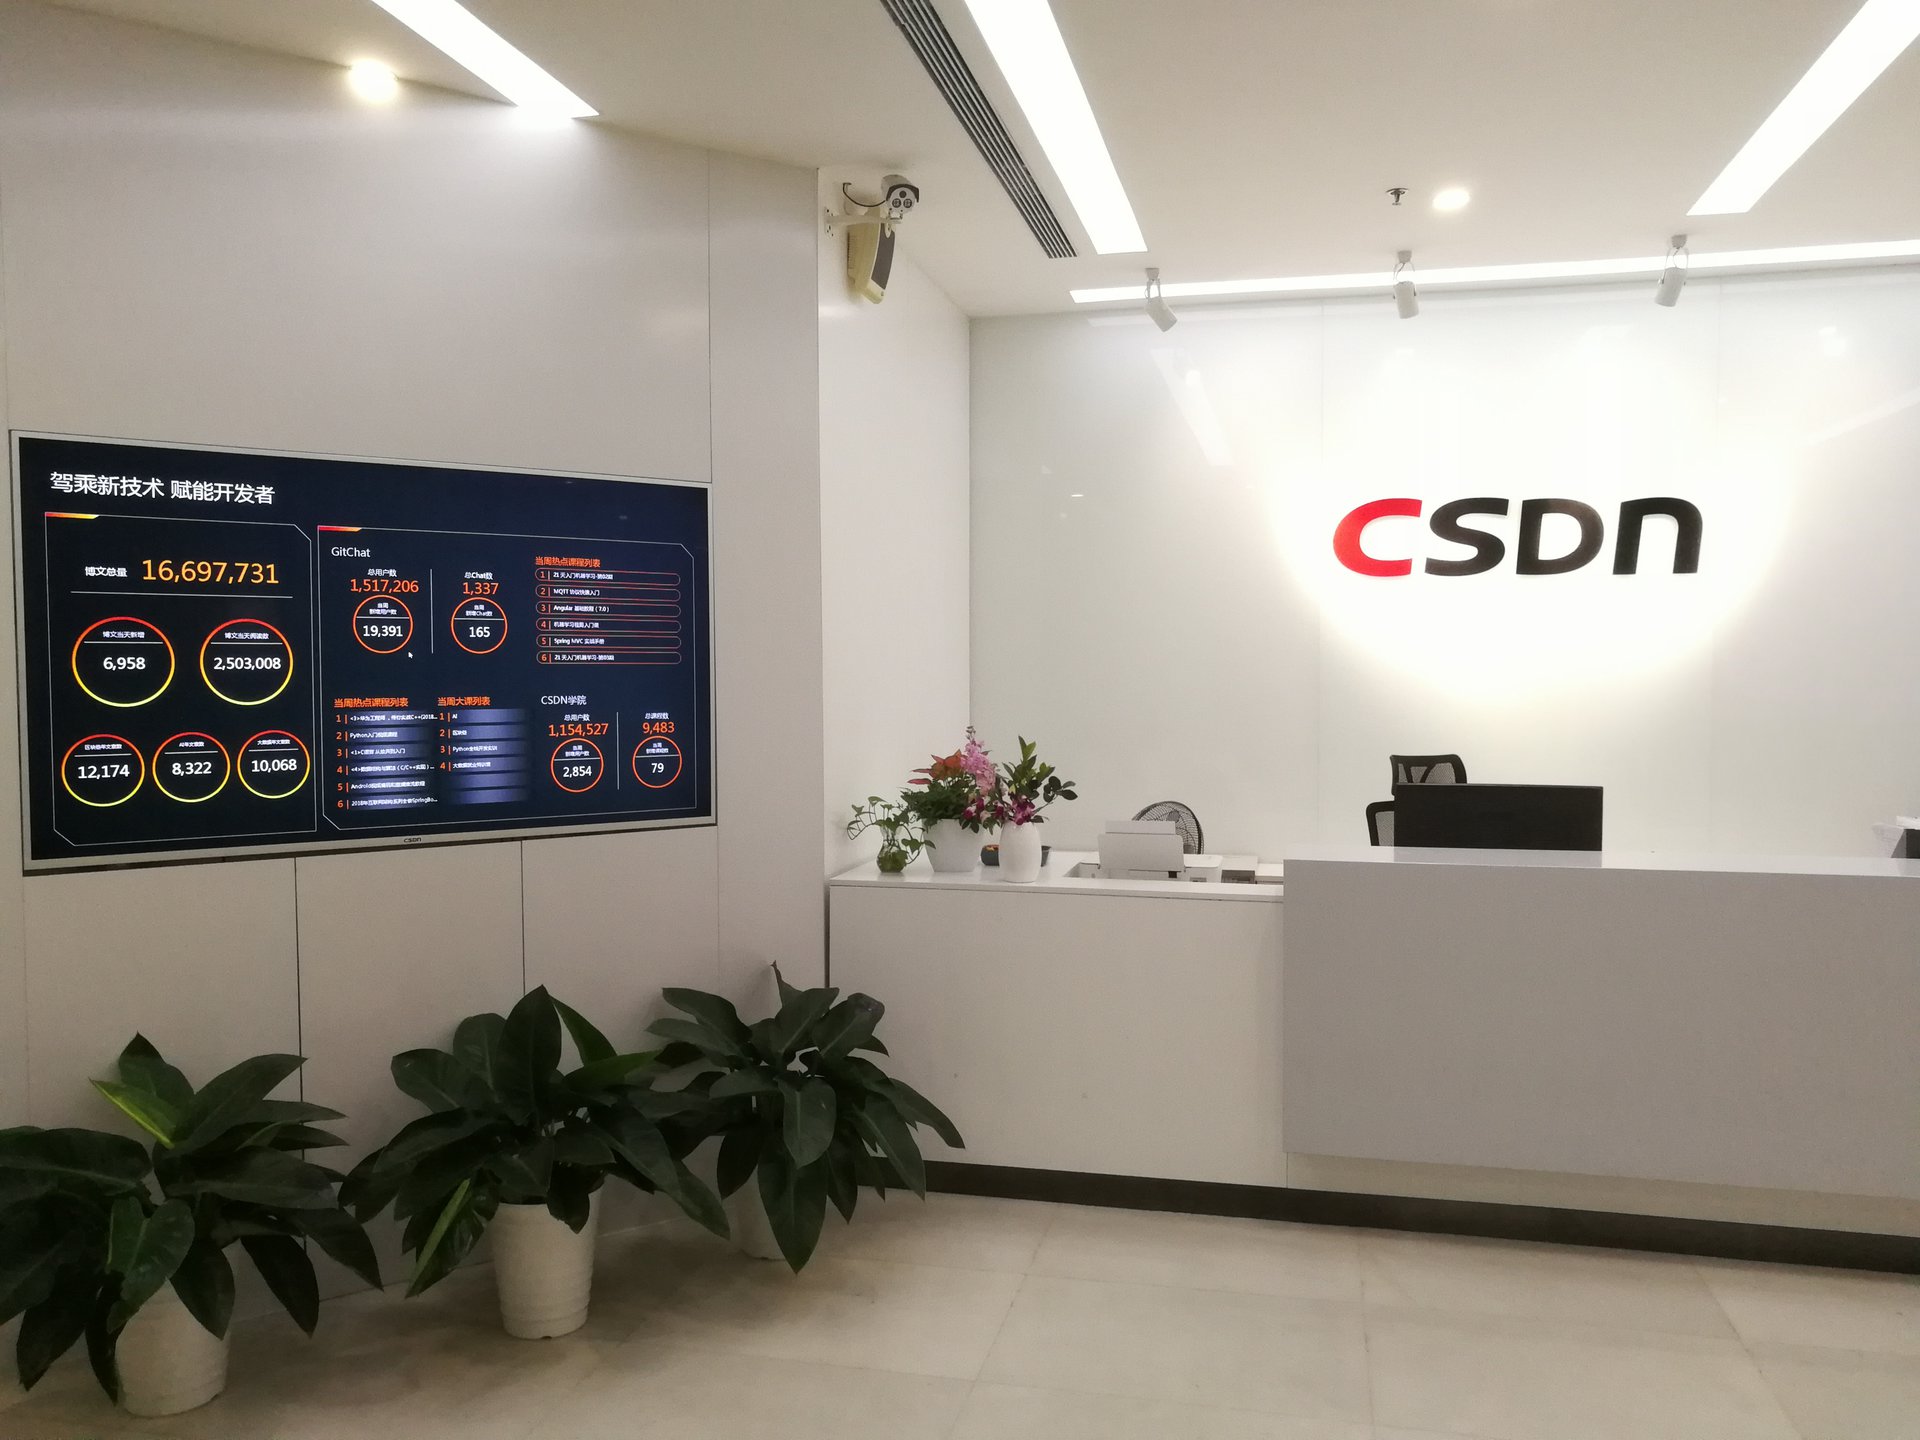 CSDN 2019新照片